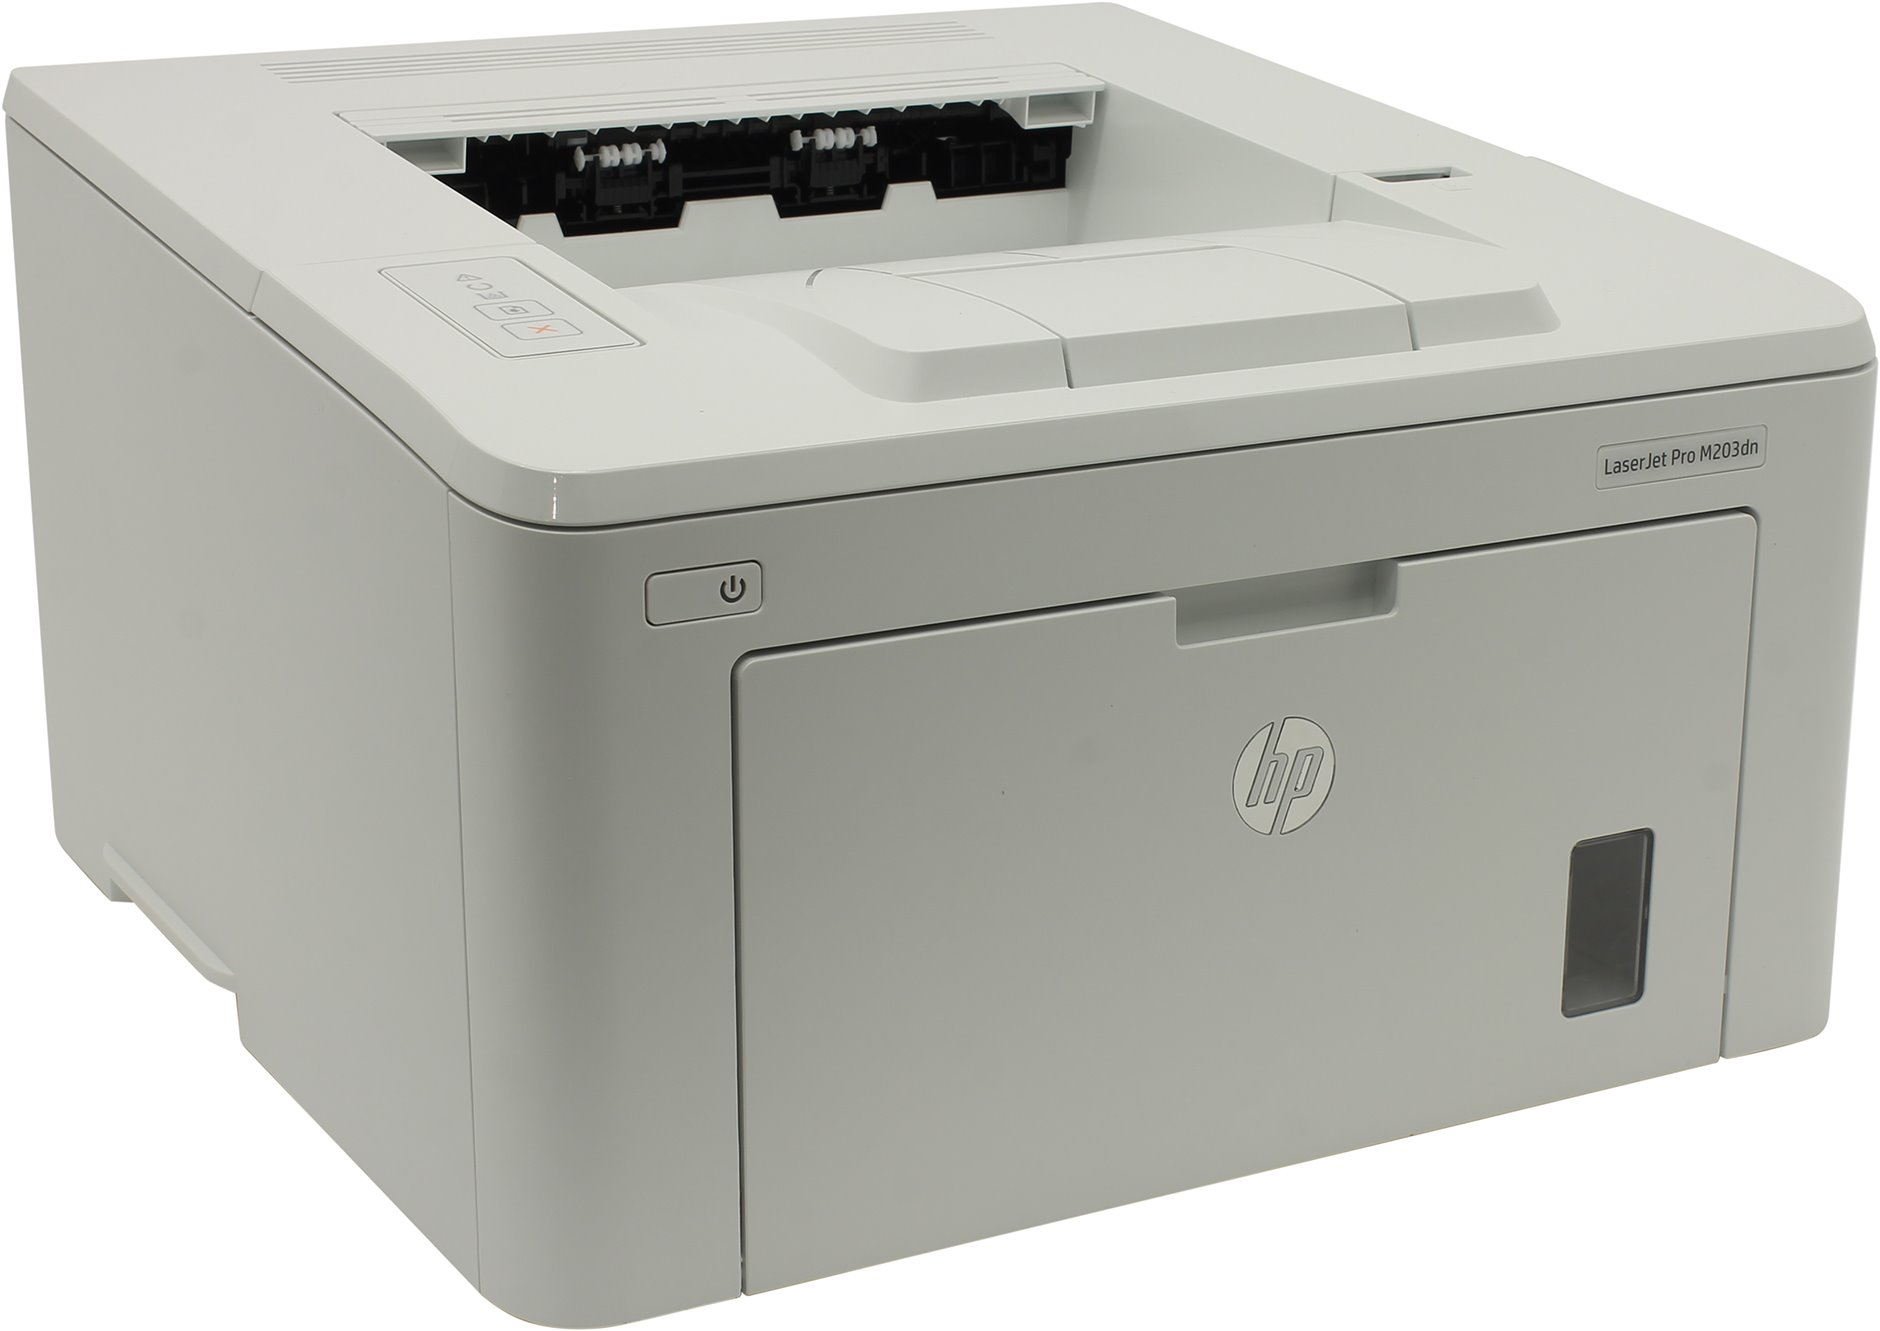 Принтер лазерный HP LaserJet Pro M203dn, A4, ч/б, 28стр/мин (A4 ч/б), 1200x1200dpi, дуплекс, сетевой, USB (G3Q46A) - фото 1